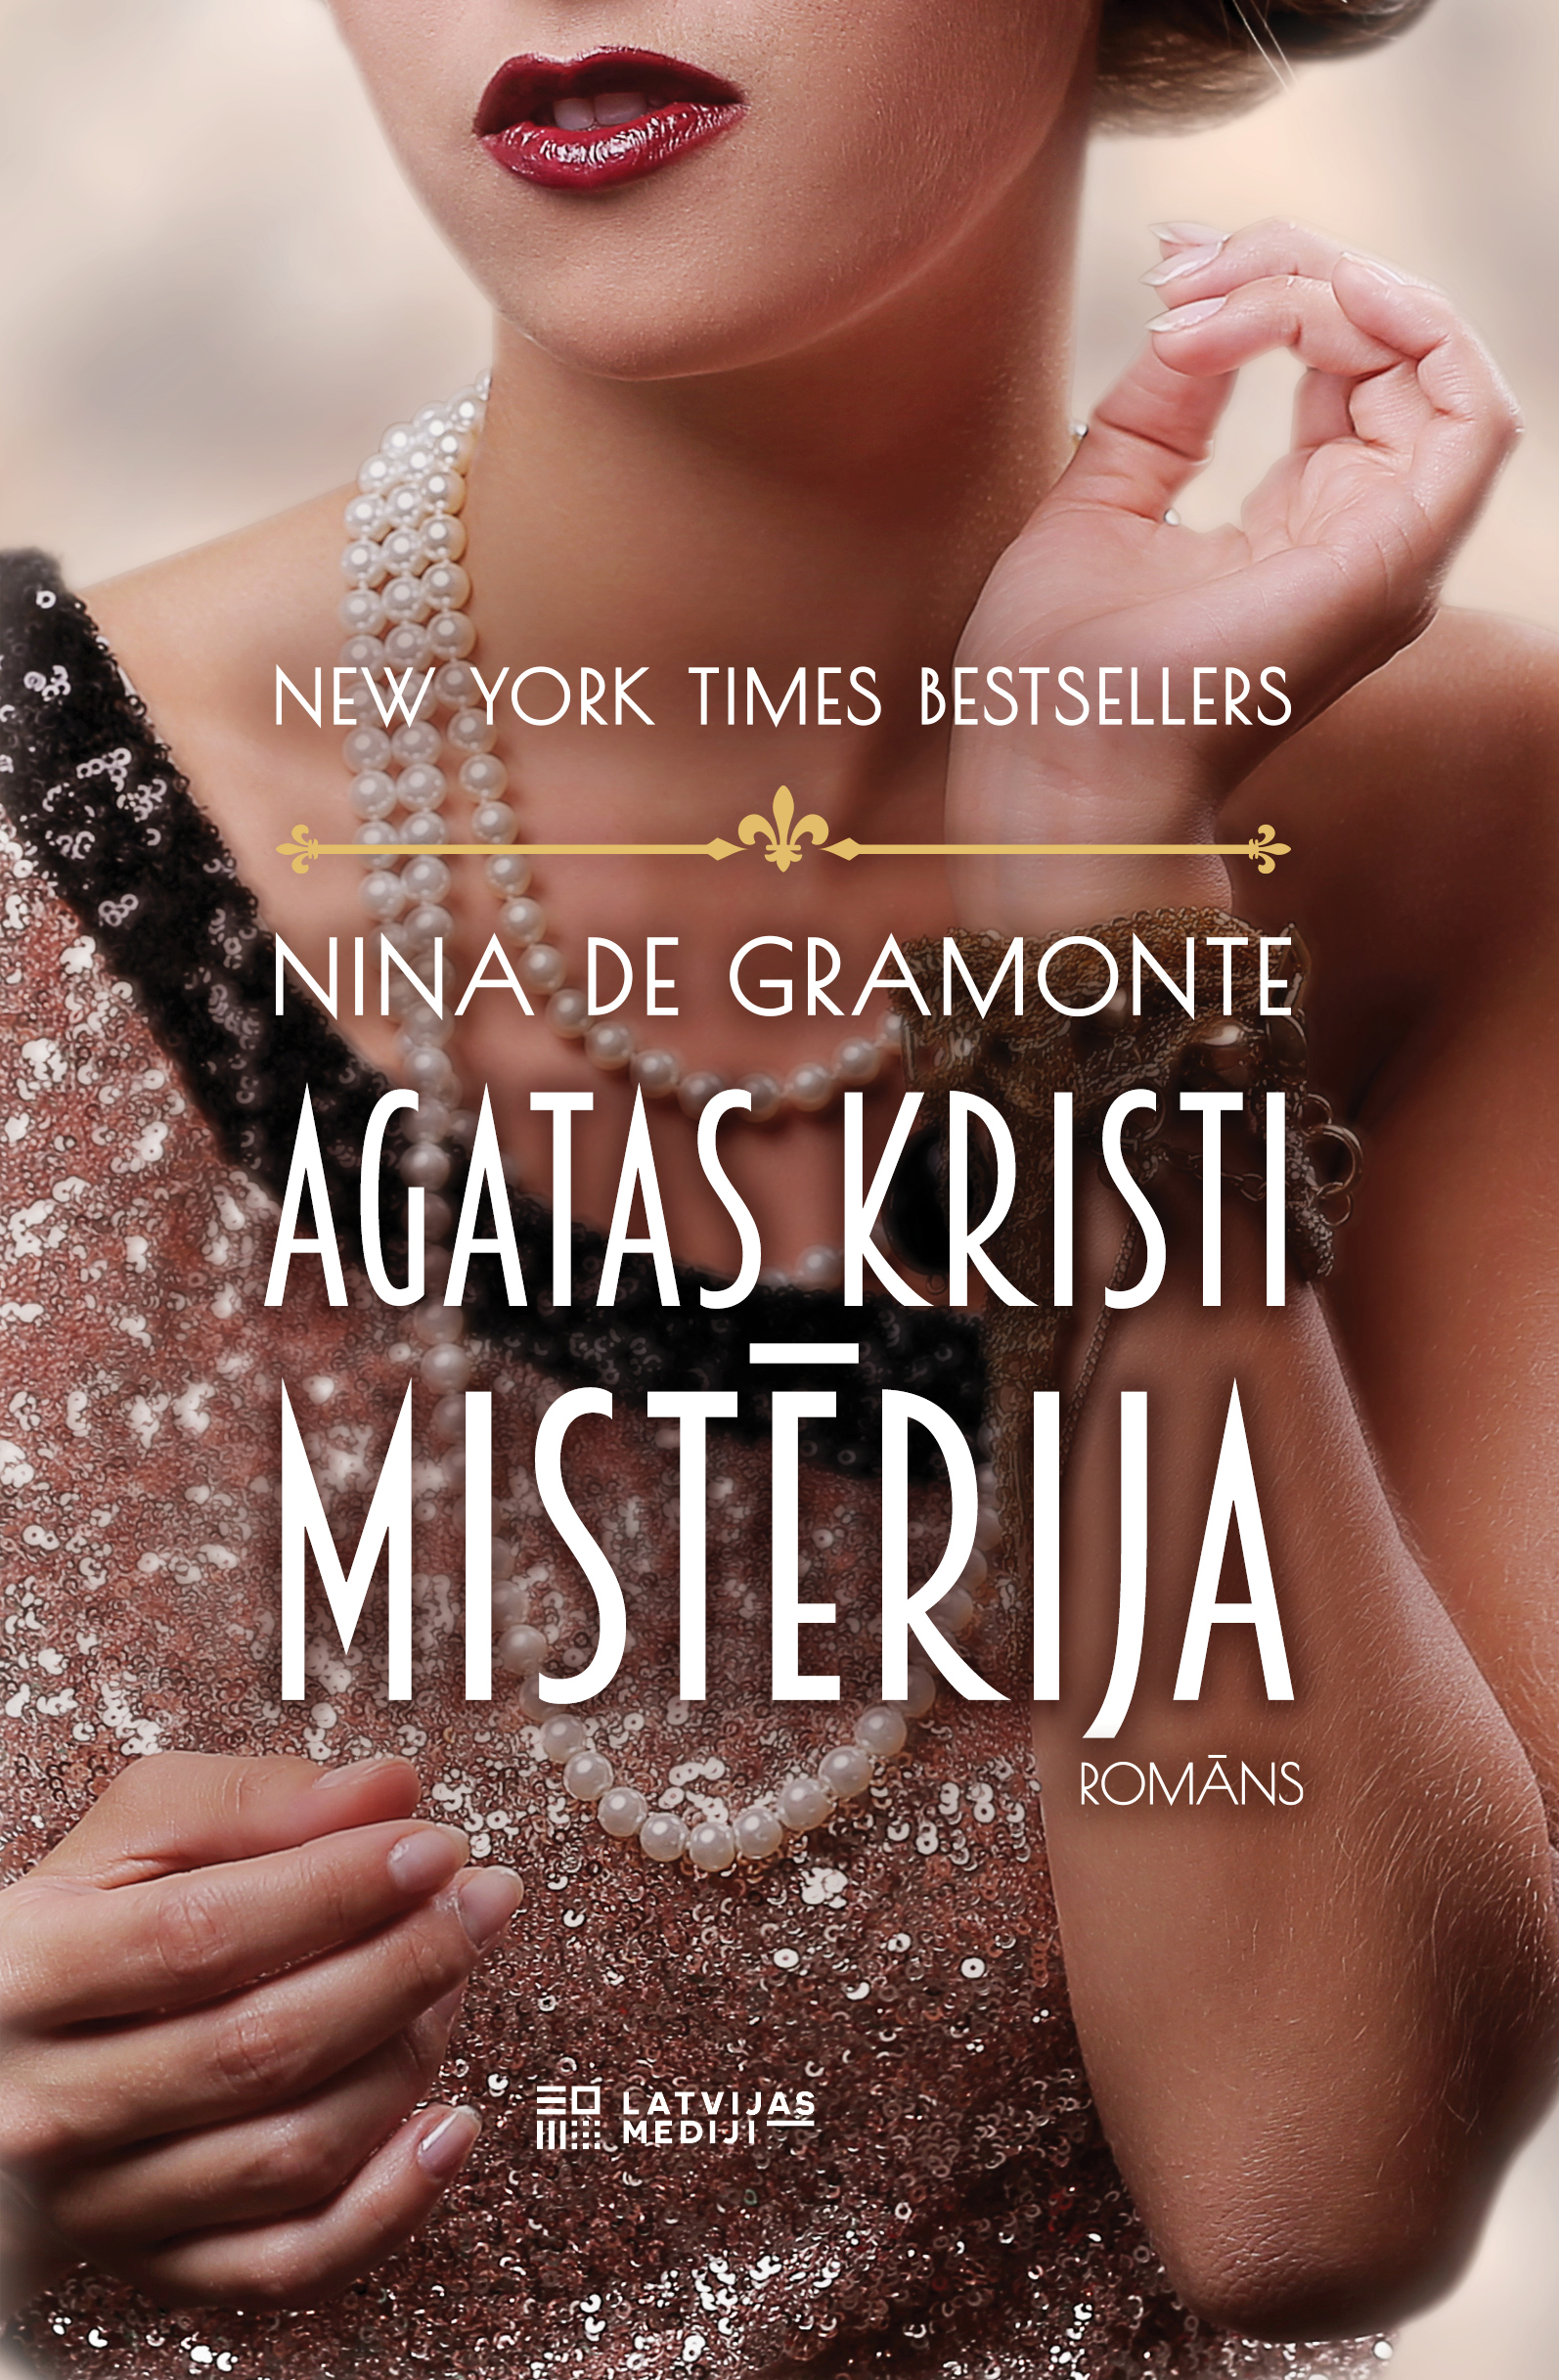 Ninas de Gramontes romāns “Agatas Kristi mistērija”.